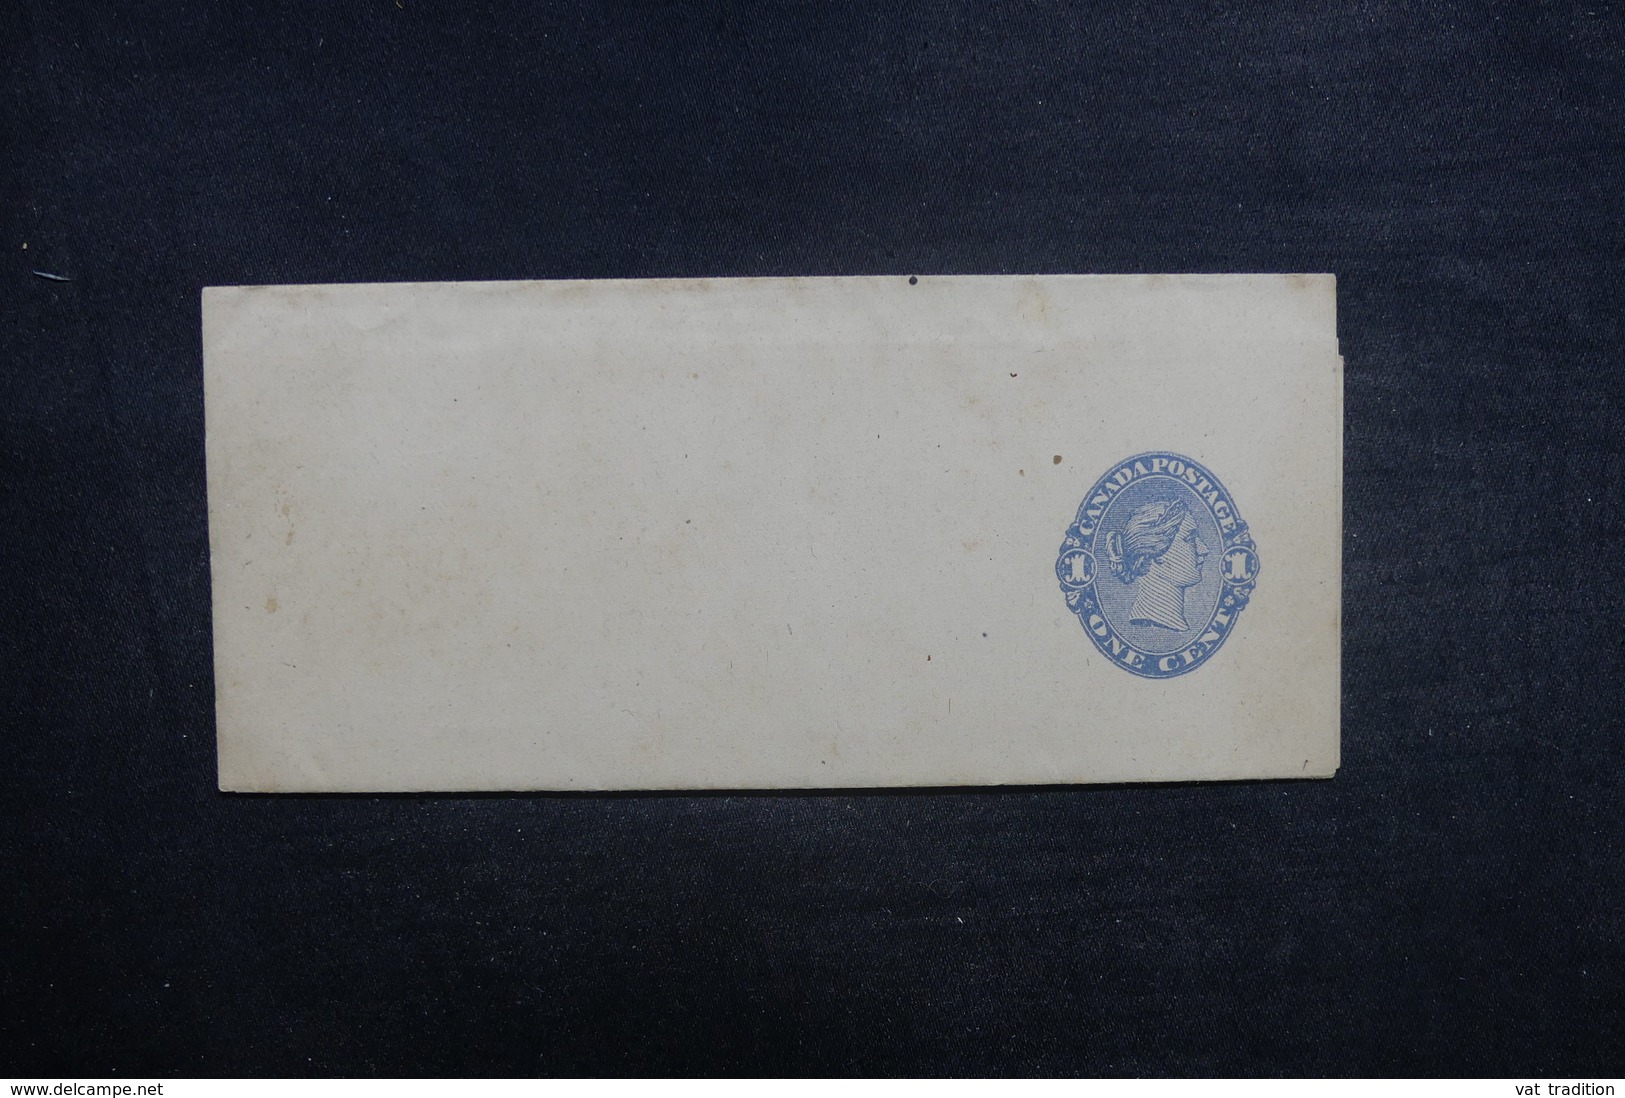 CANADA - Entier Postal Non Utilisé - L 37889 - 1860-1899 Regno Di Victoria